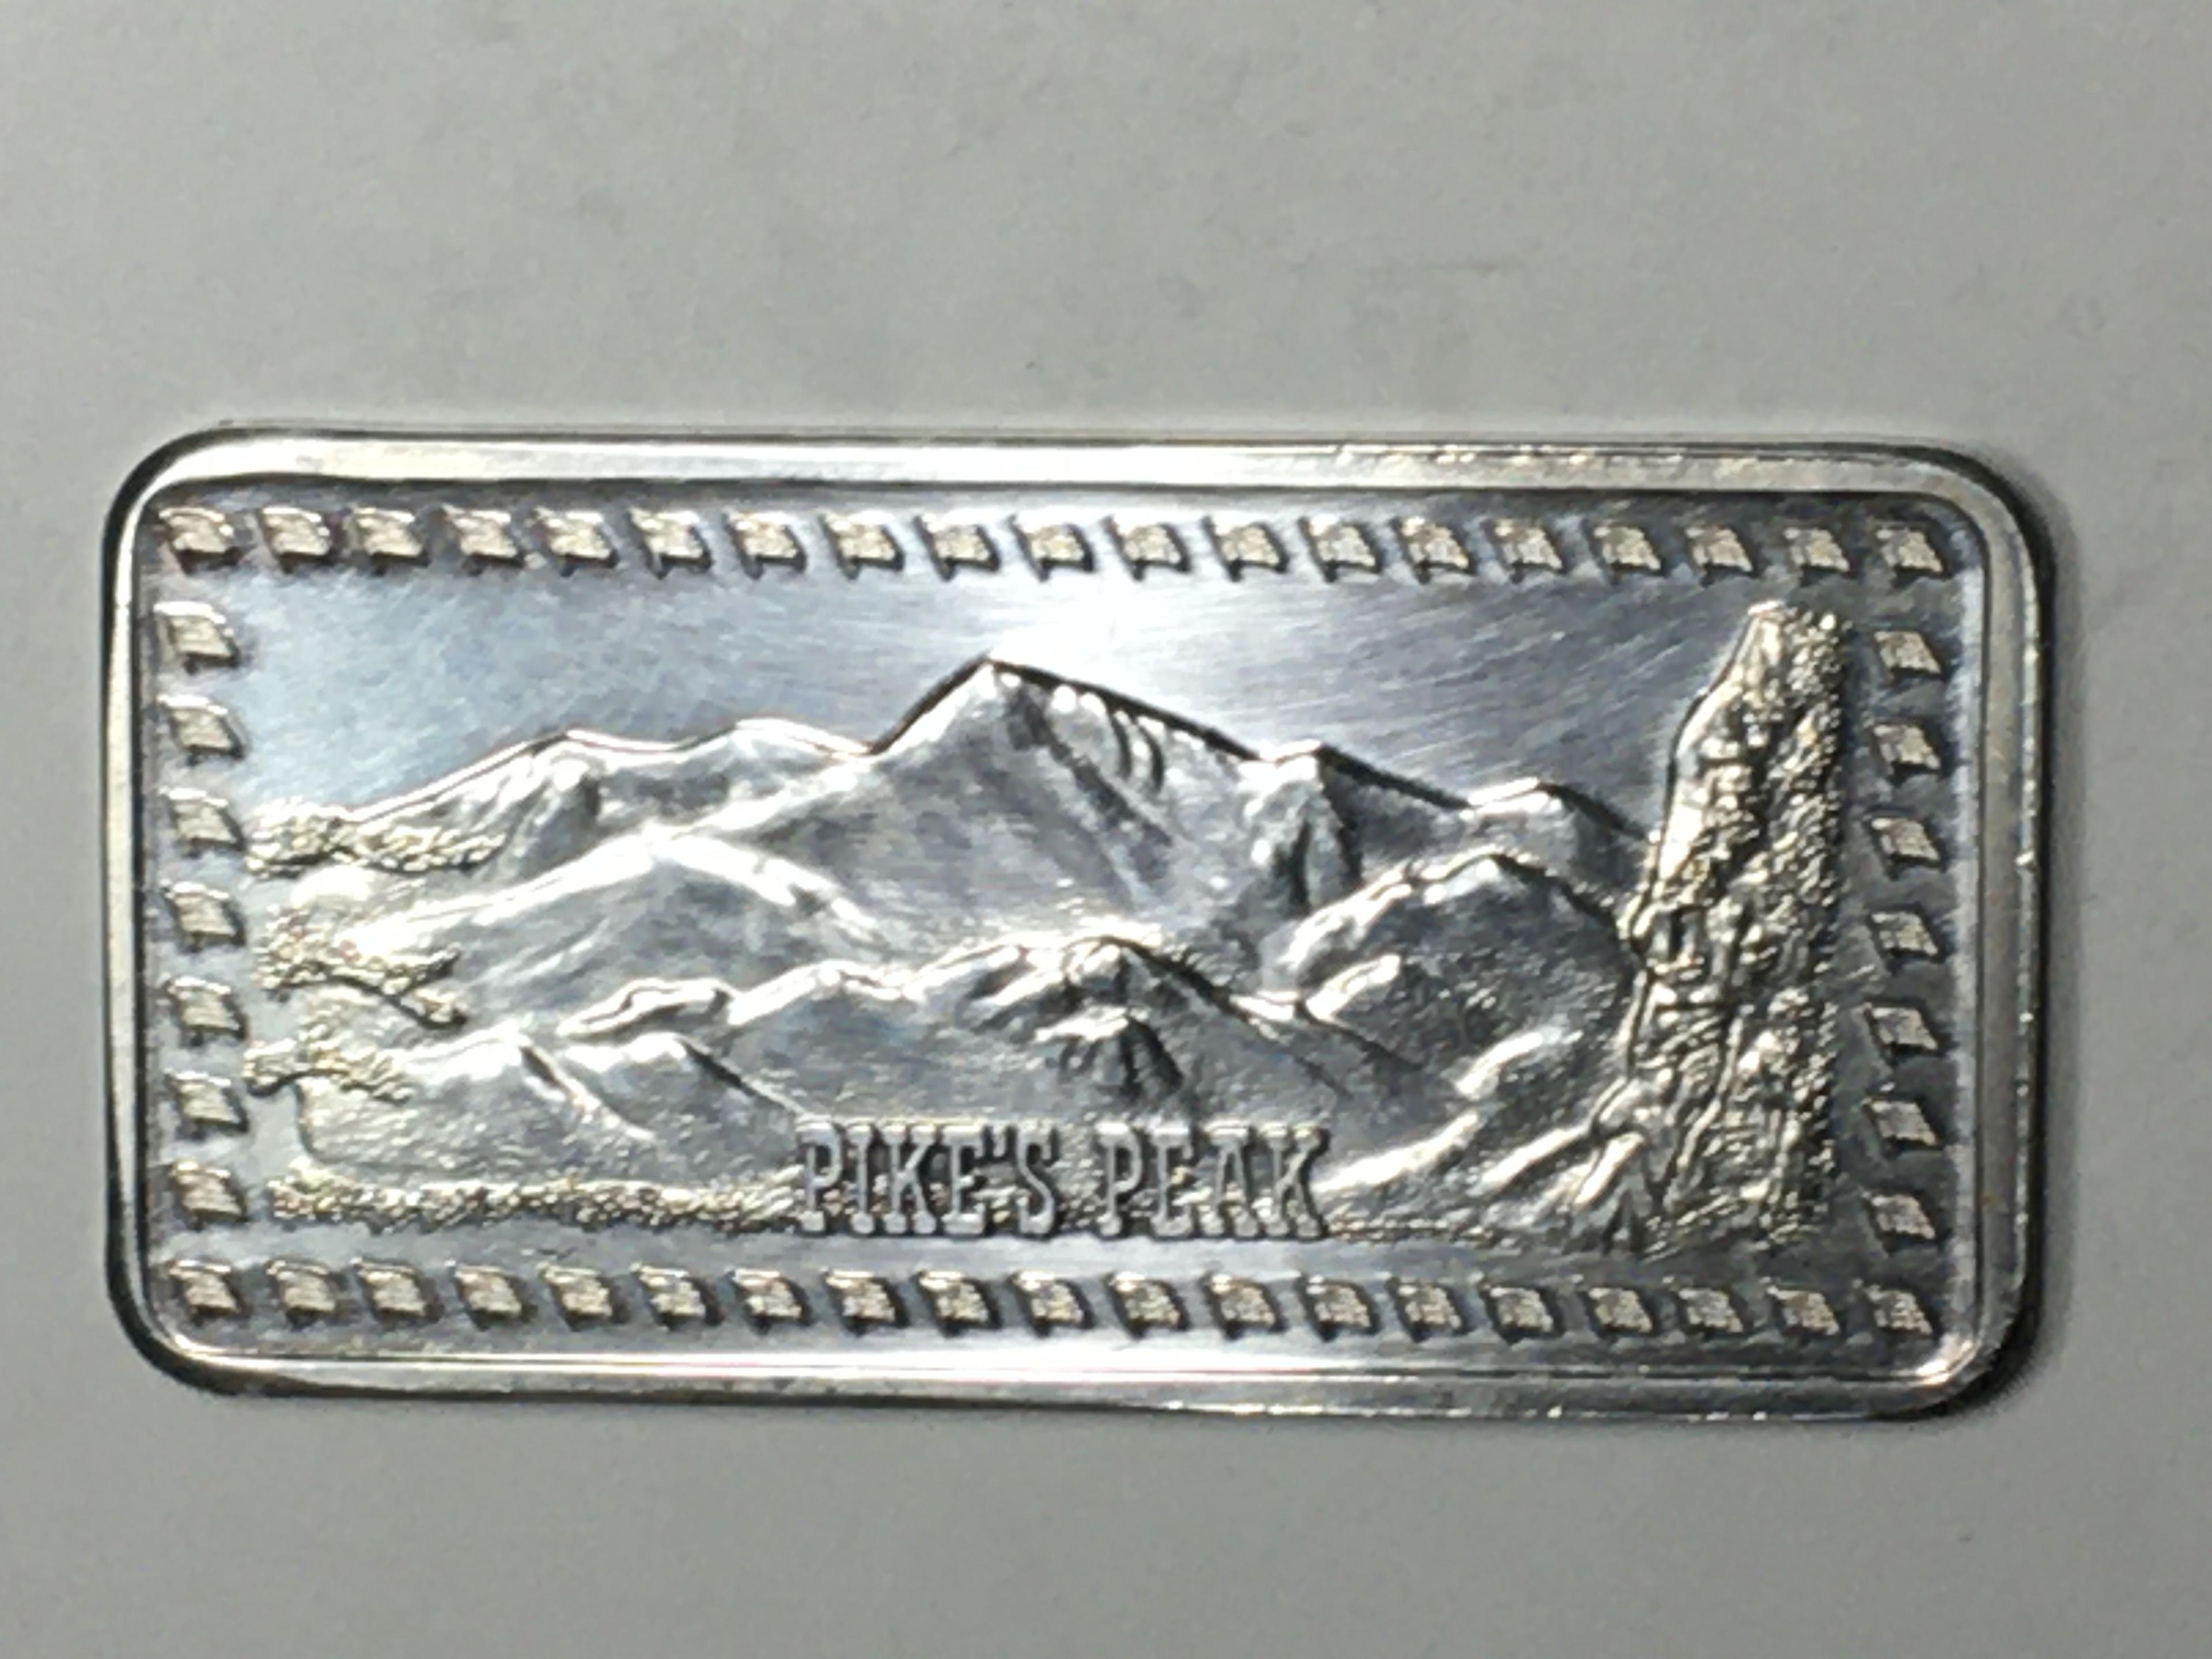 Pikes Peak 1 Oz .999 Silver